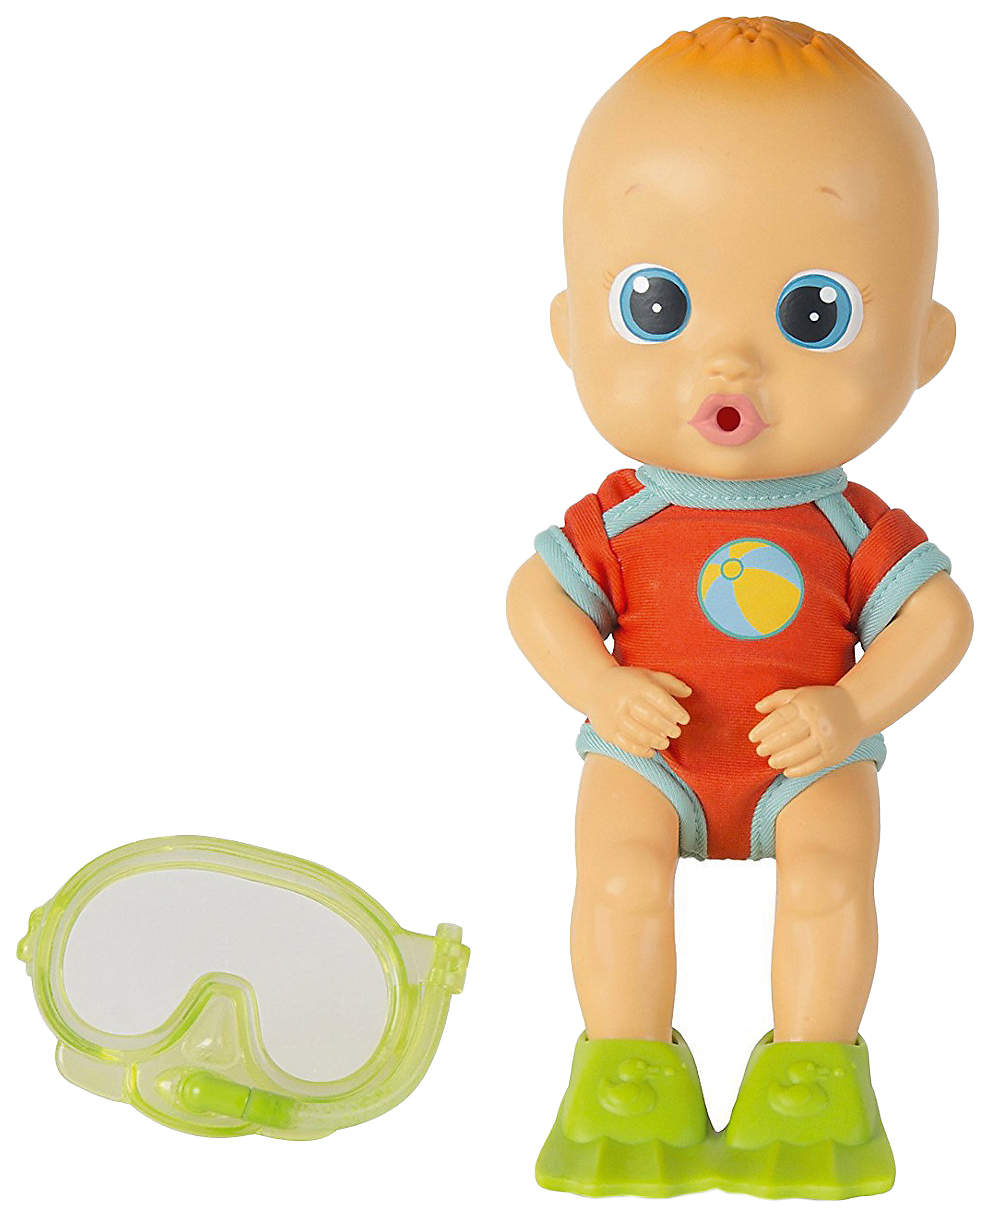 Кукла для купания Bloopies - Коби, в открытой коробке, 24 см IMC toys кукла для купания bloopies луна в открытой коробке 24 см imc toys